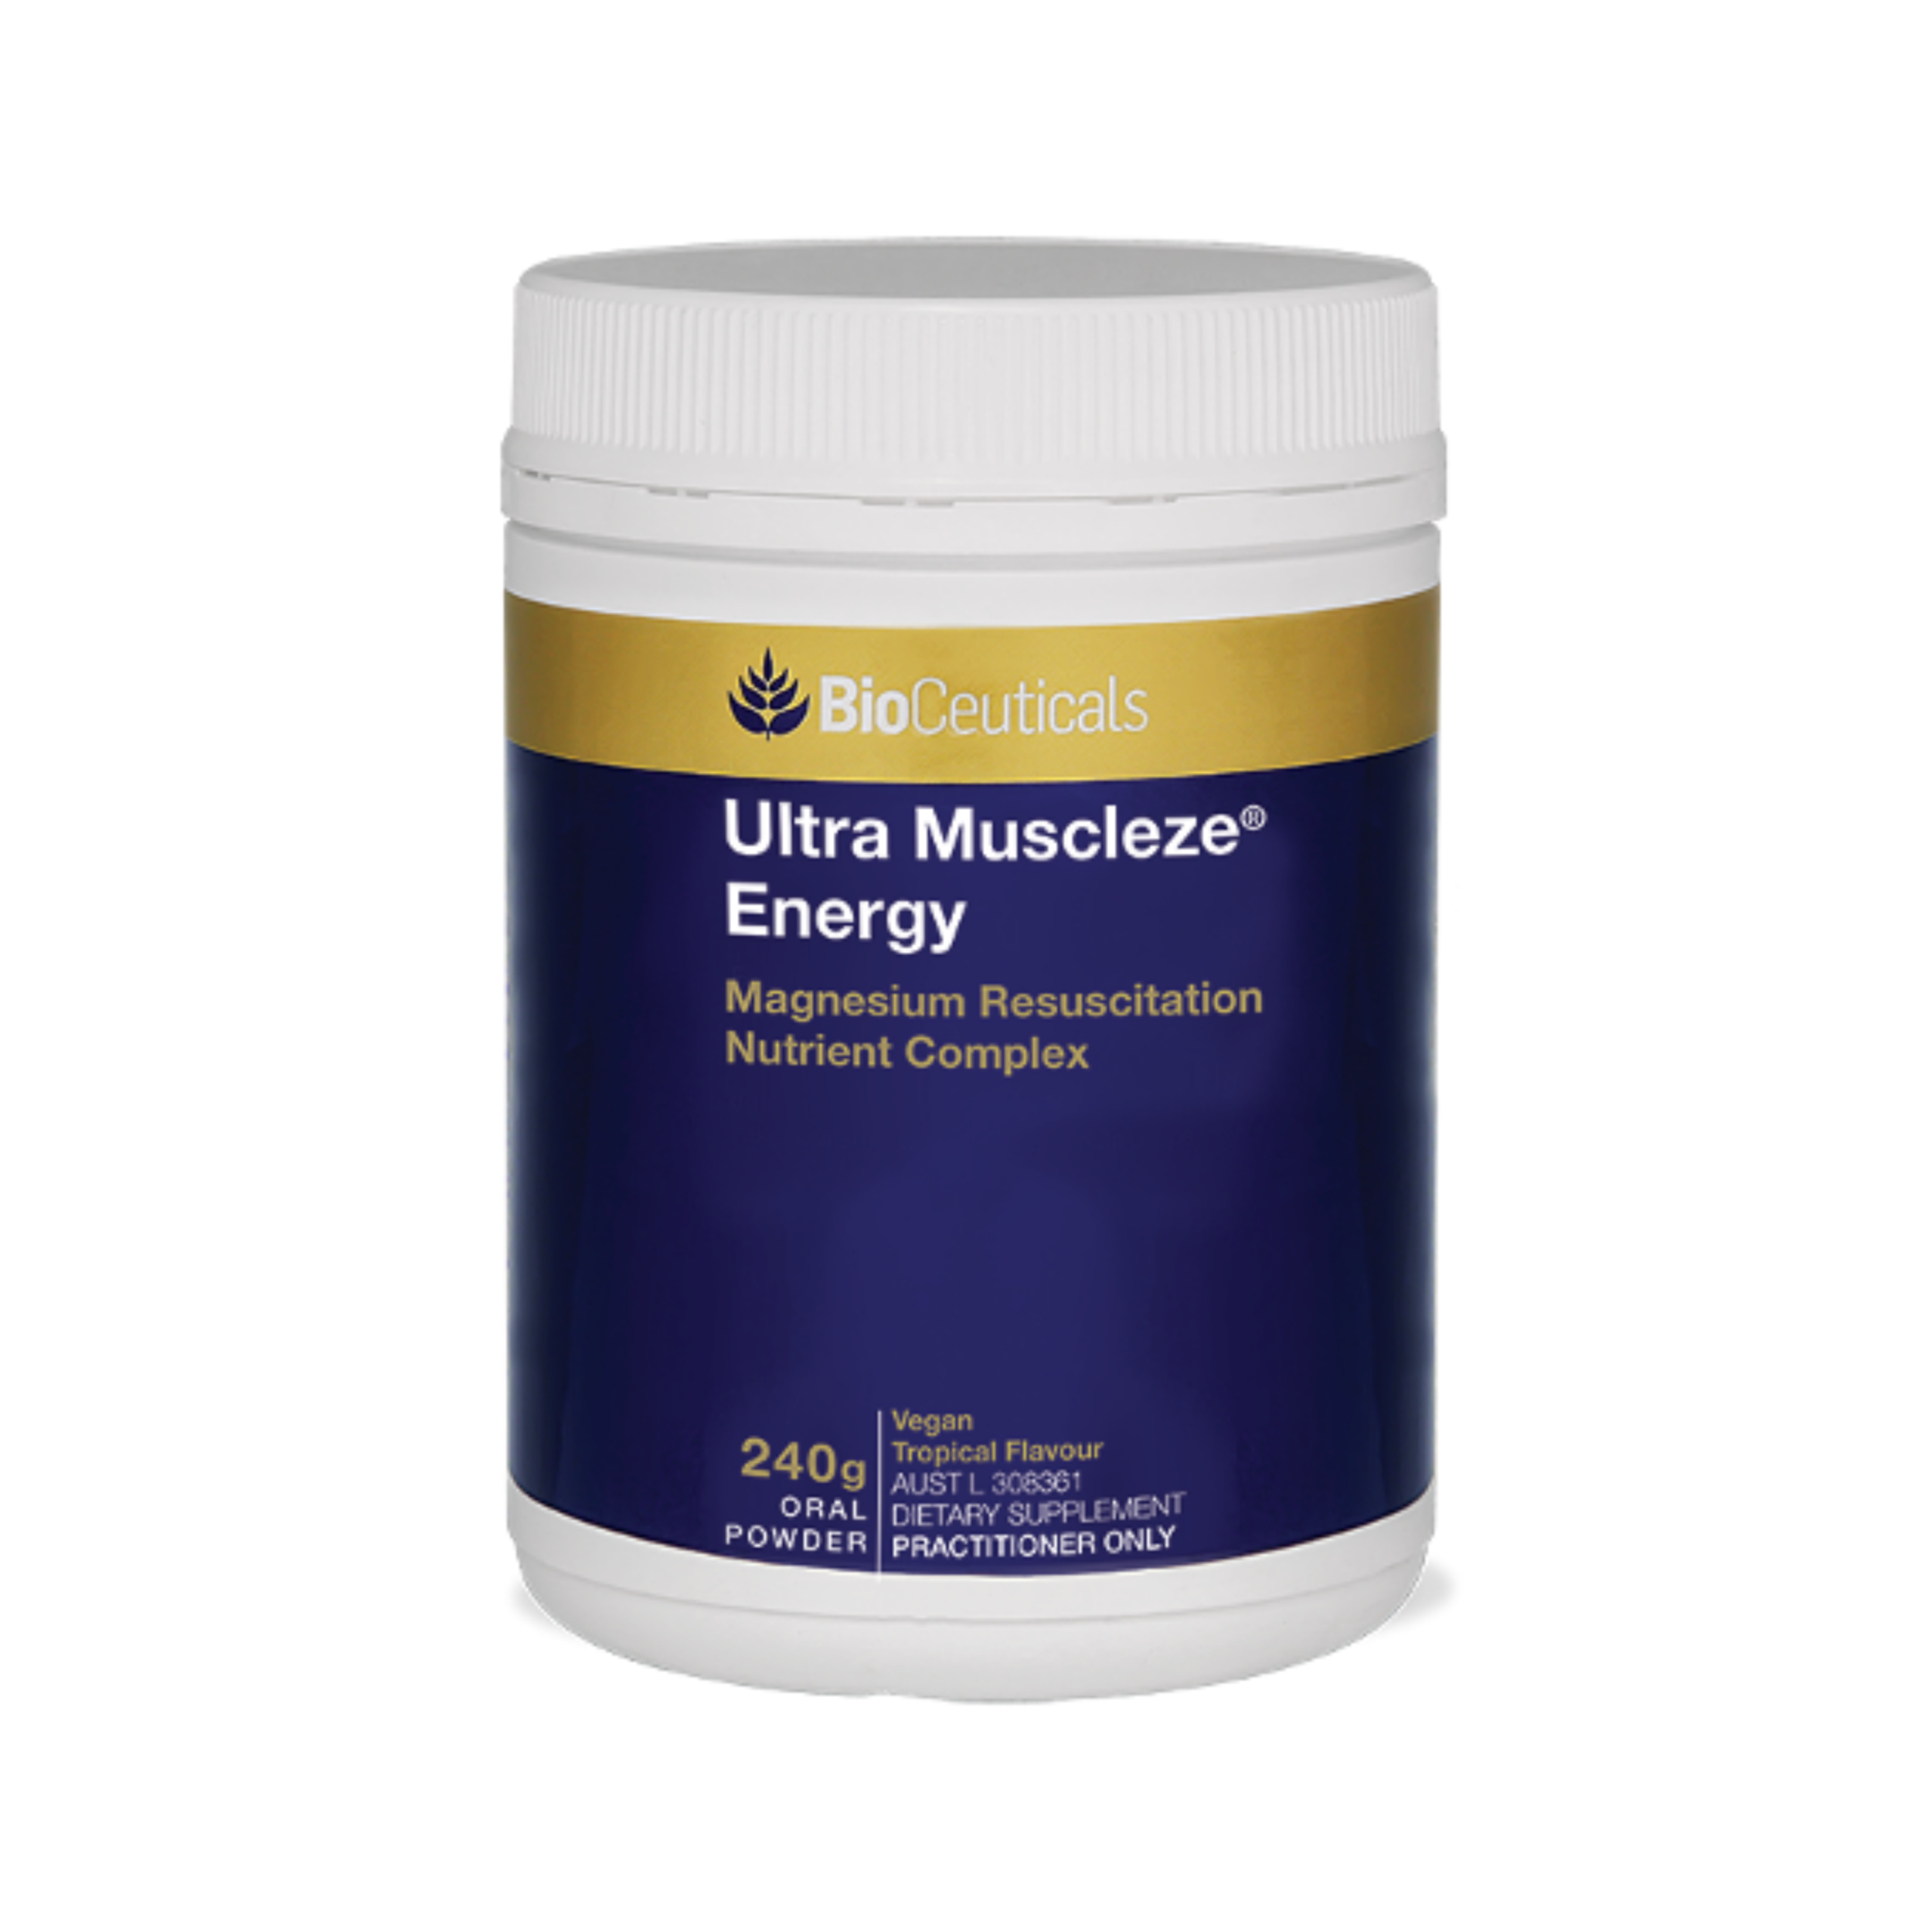 Bioceuticals IUltra Muscleze® Energy Magnesium Resuscitation Nutrient Complex 240g